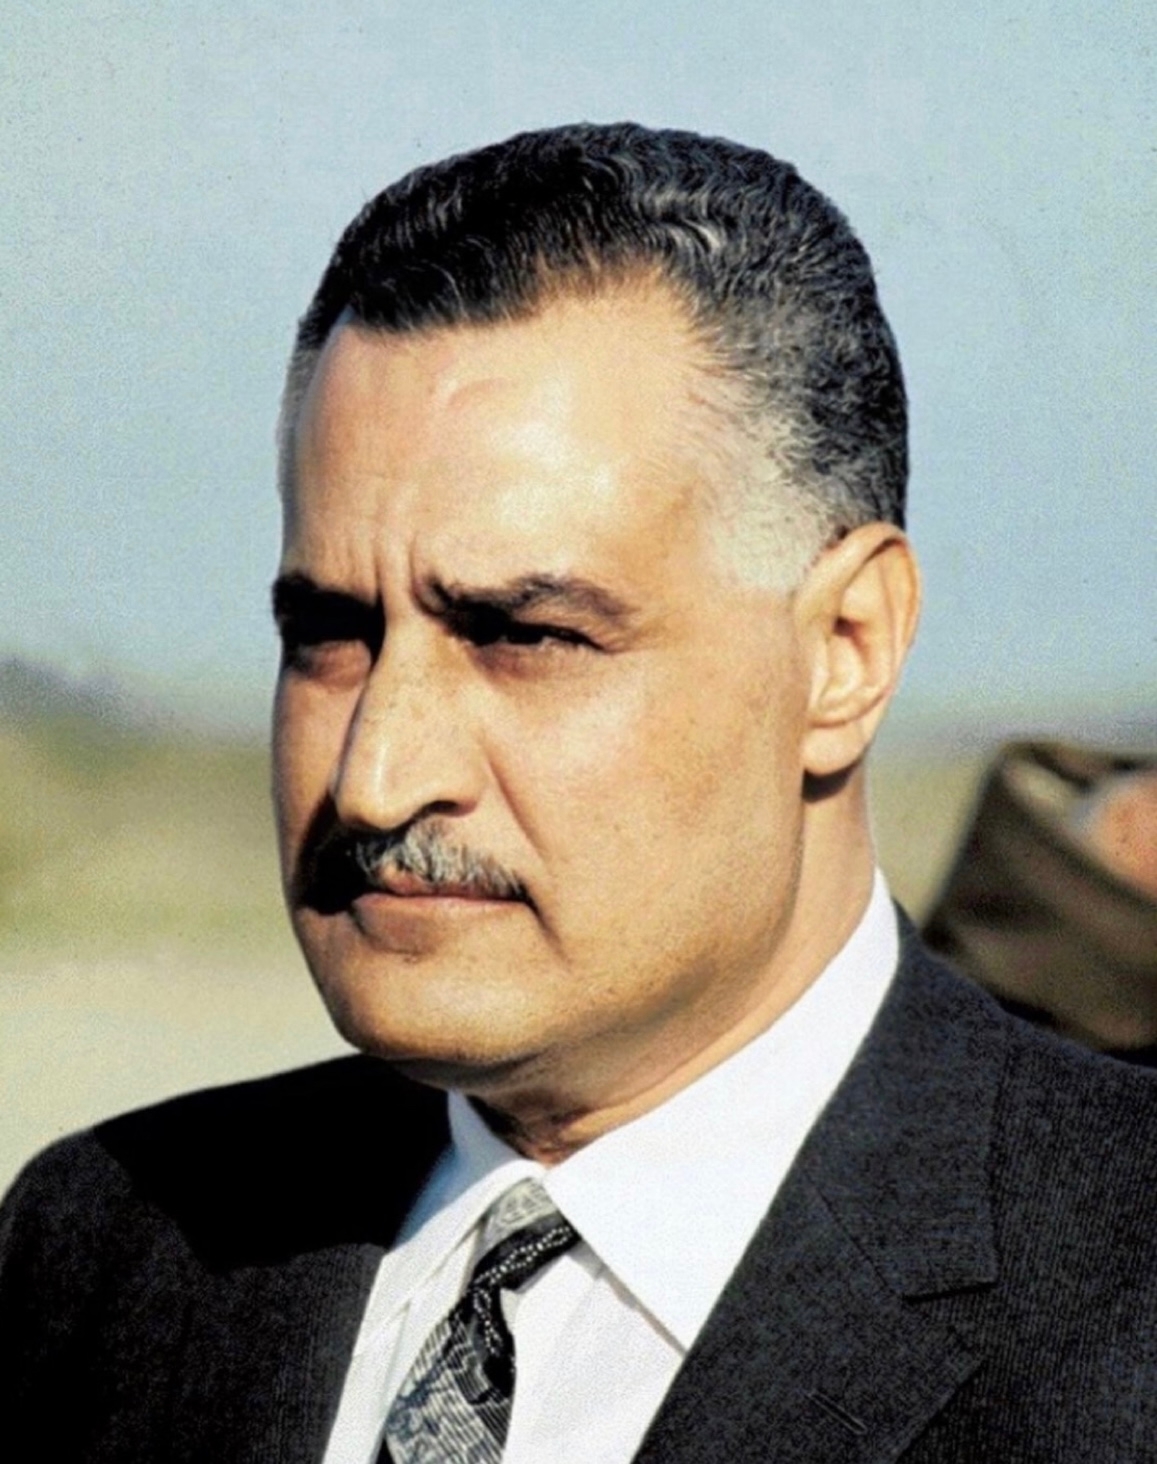 auteur Gamal Abdel Nasser de la citation Tout le monde a le pouvoir du cerveau, mais les gens ne savent pas correctement le moment de l'utilisation. Le gagnant sait quand, où et comment l'utiliser.